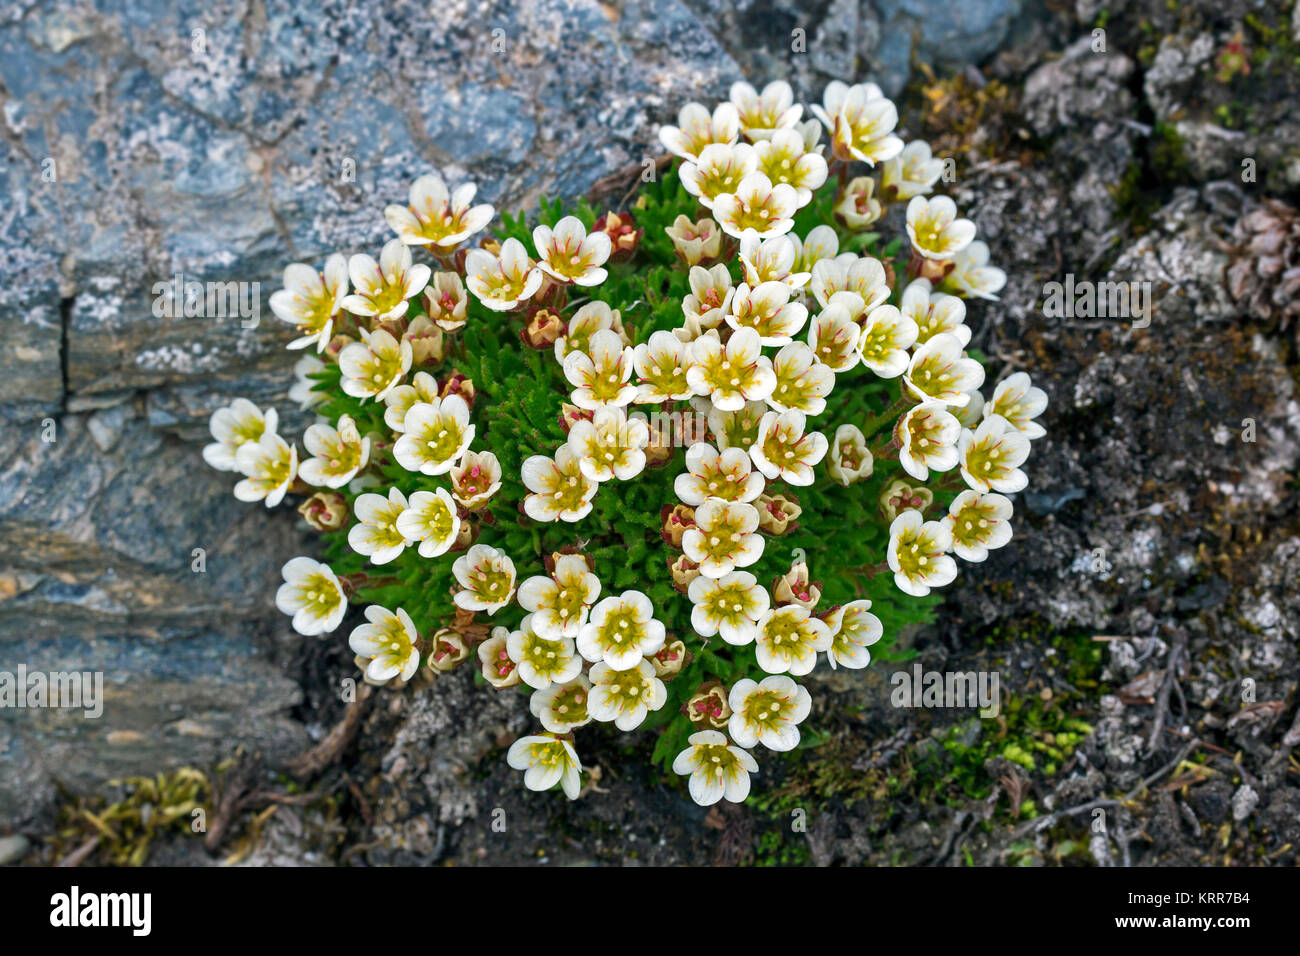 Saxifrage alpin tufté tufté / saxifrage à feuilles opposées (Saxifraga cespitosa) en fleur sur la toundra arctique Banque D'Images